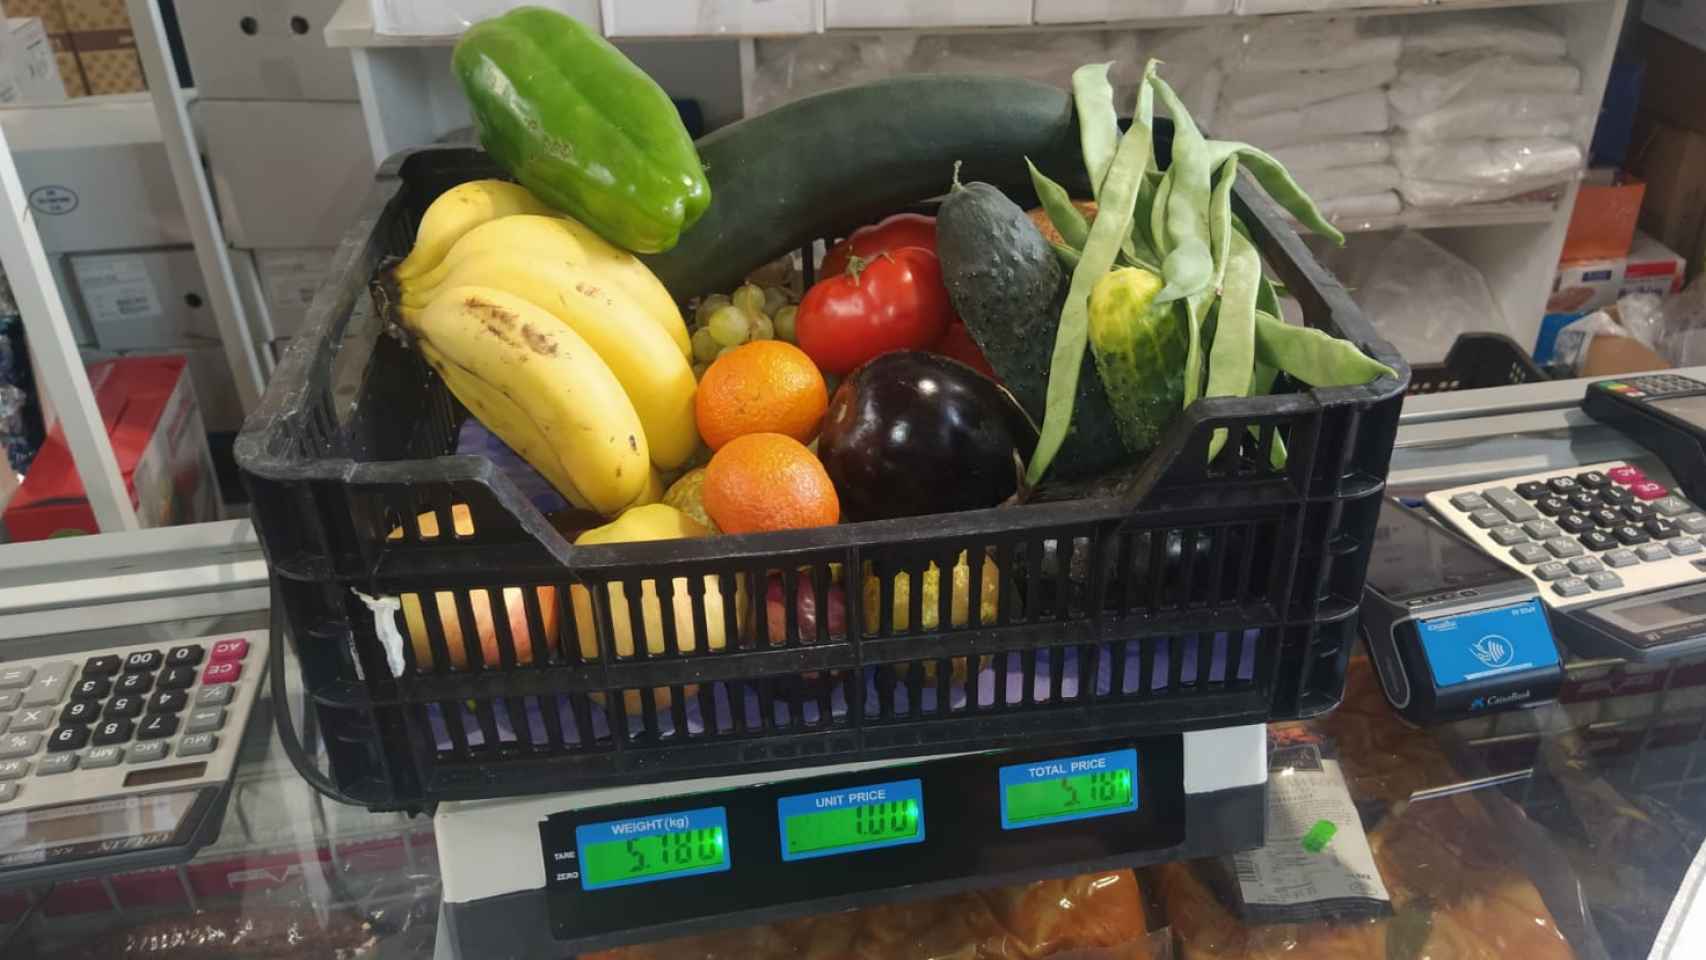 La caja con fruta y verdura que pesa 5,18 kilos y cuesta 5,18 euros.